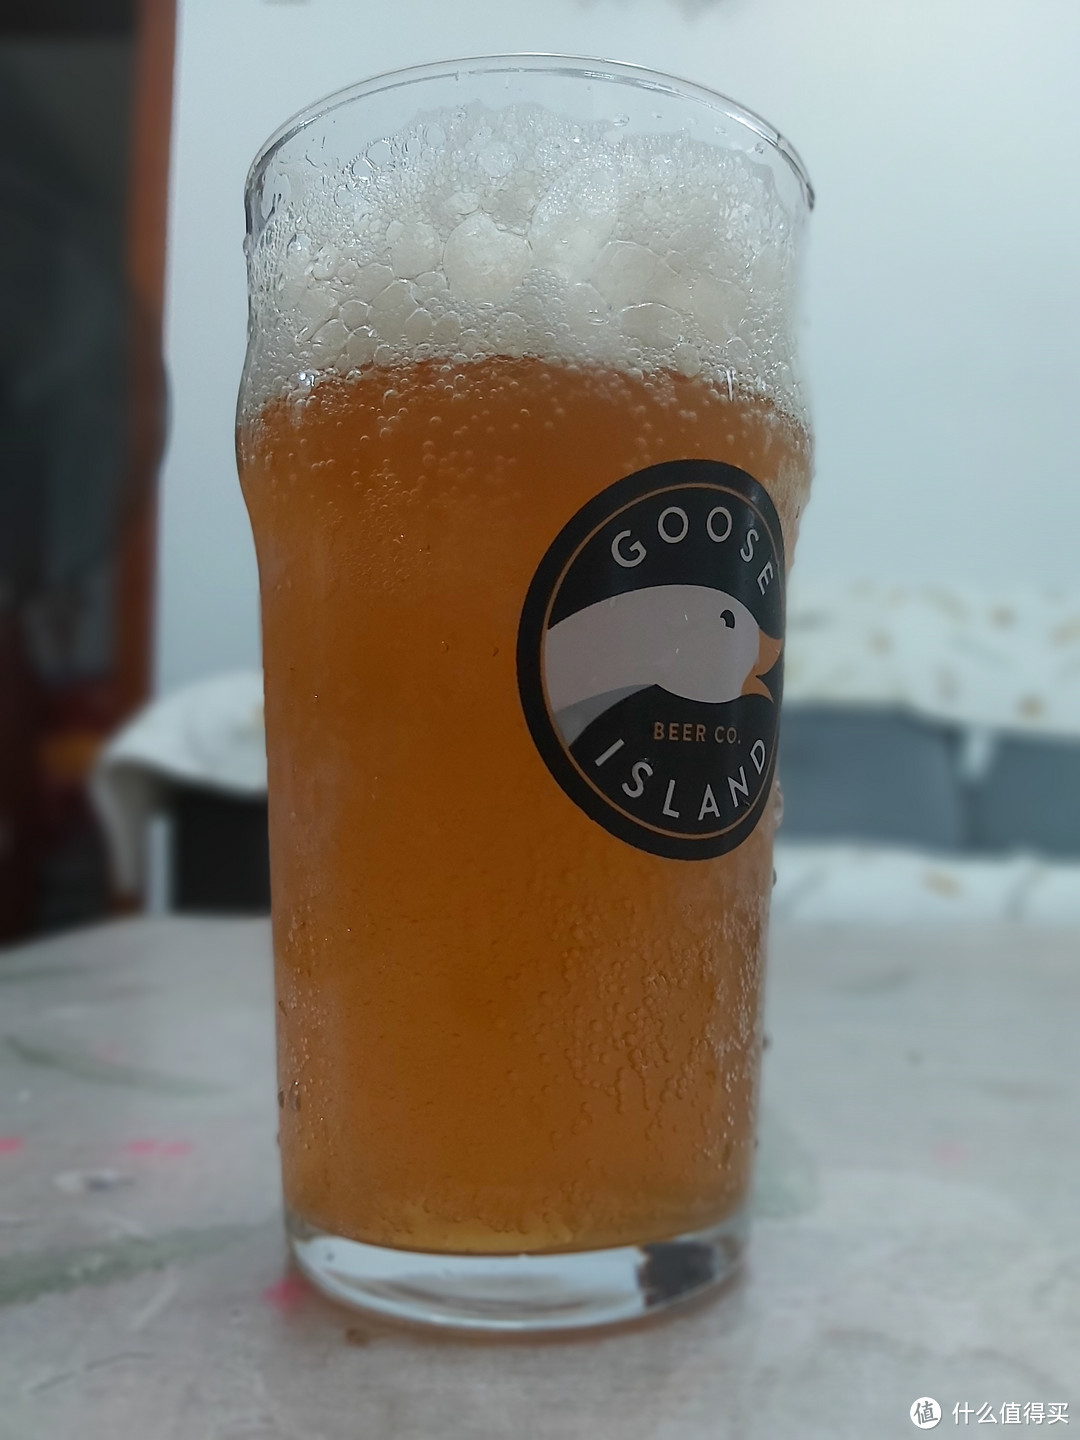 大鹅的啤酒杯估计要贯穿整个夏季啤酒集锦了！